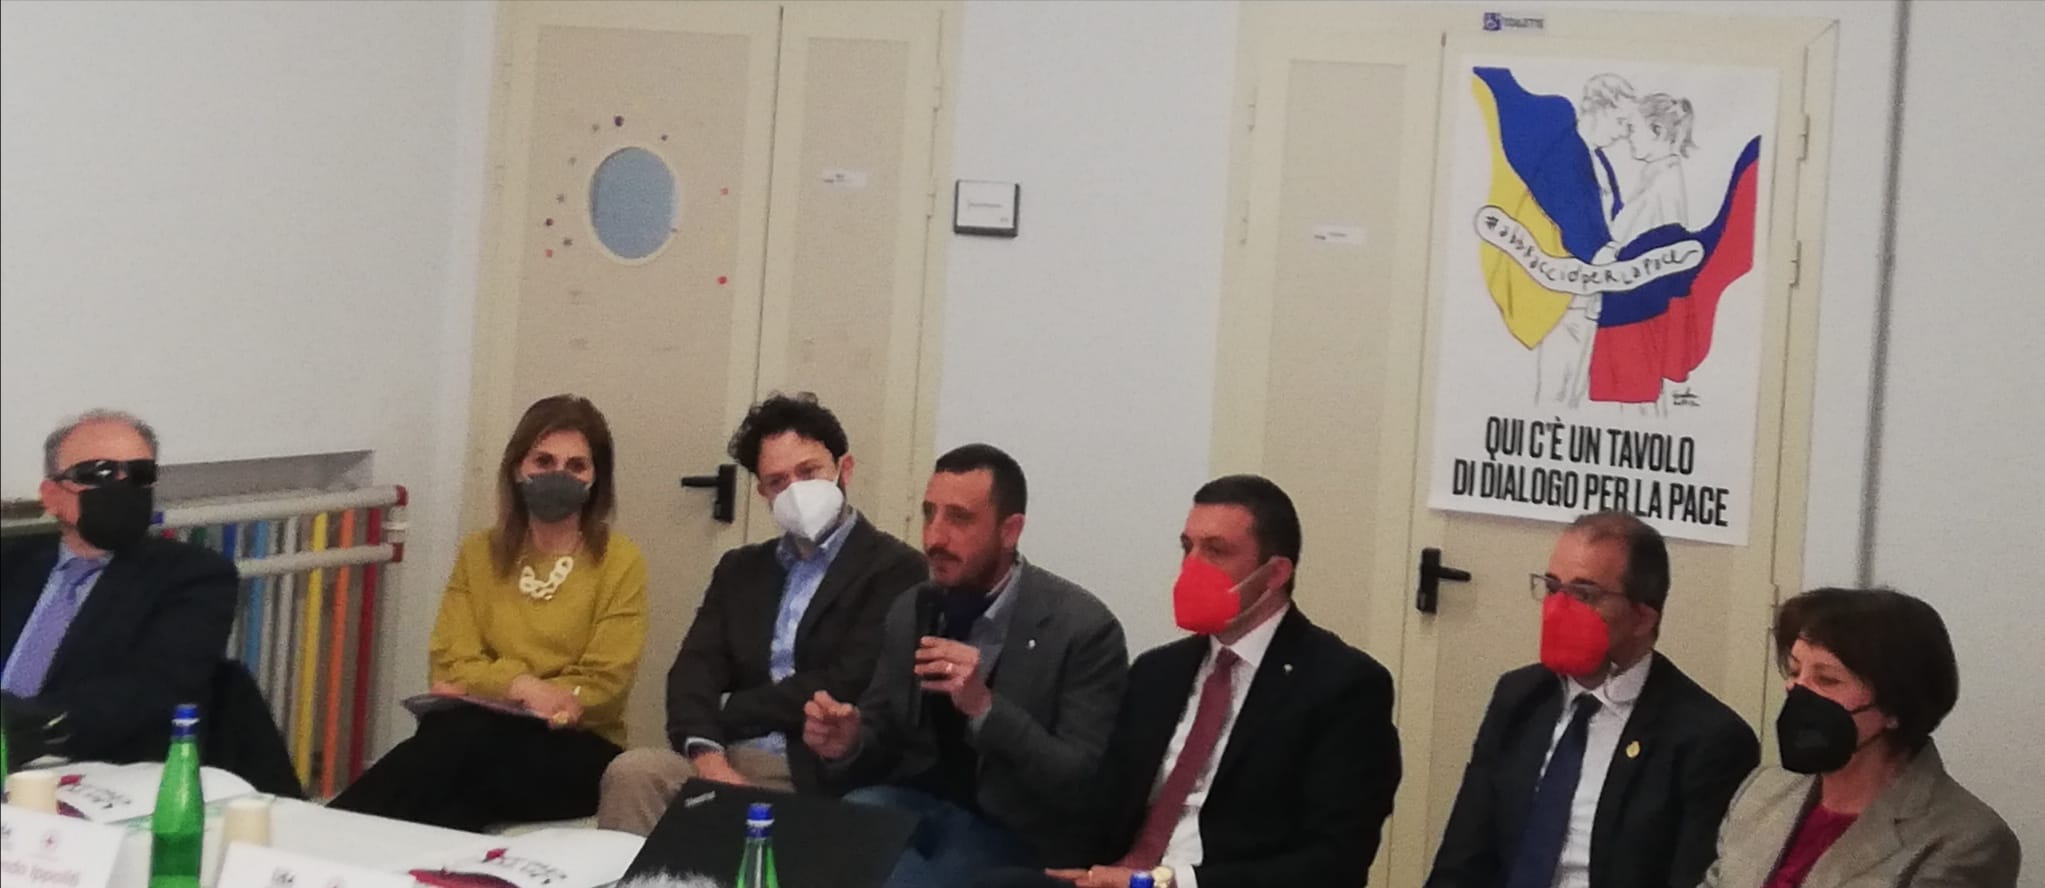 Benevento| Disabilità e inclusione lavorativa, oggi il primo incontro del progetto L.I.S.A